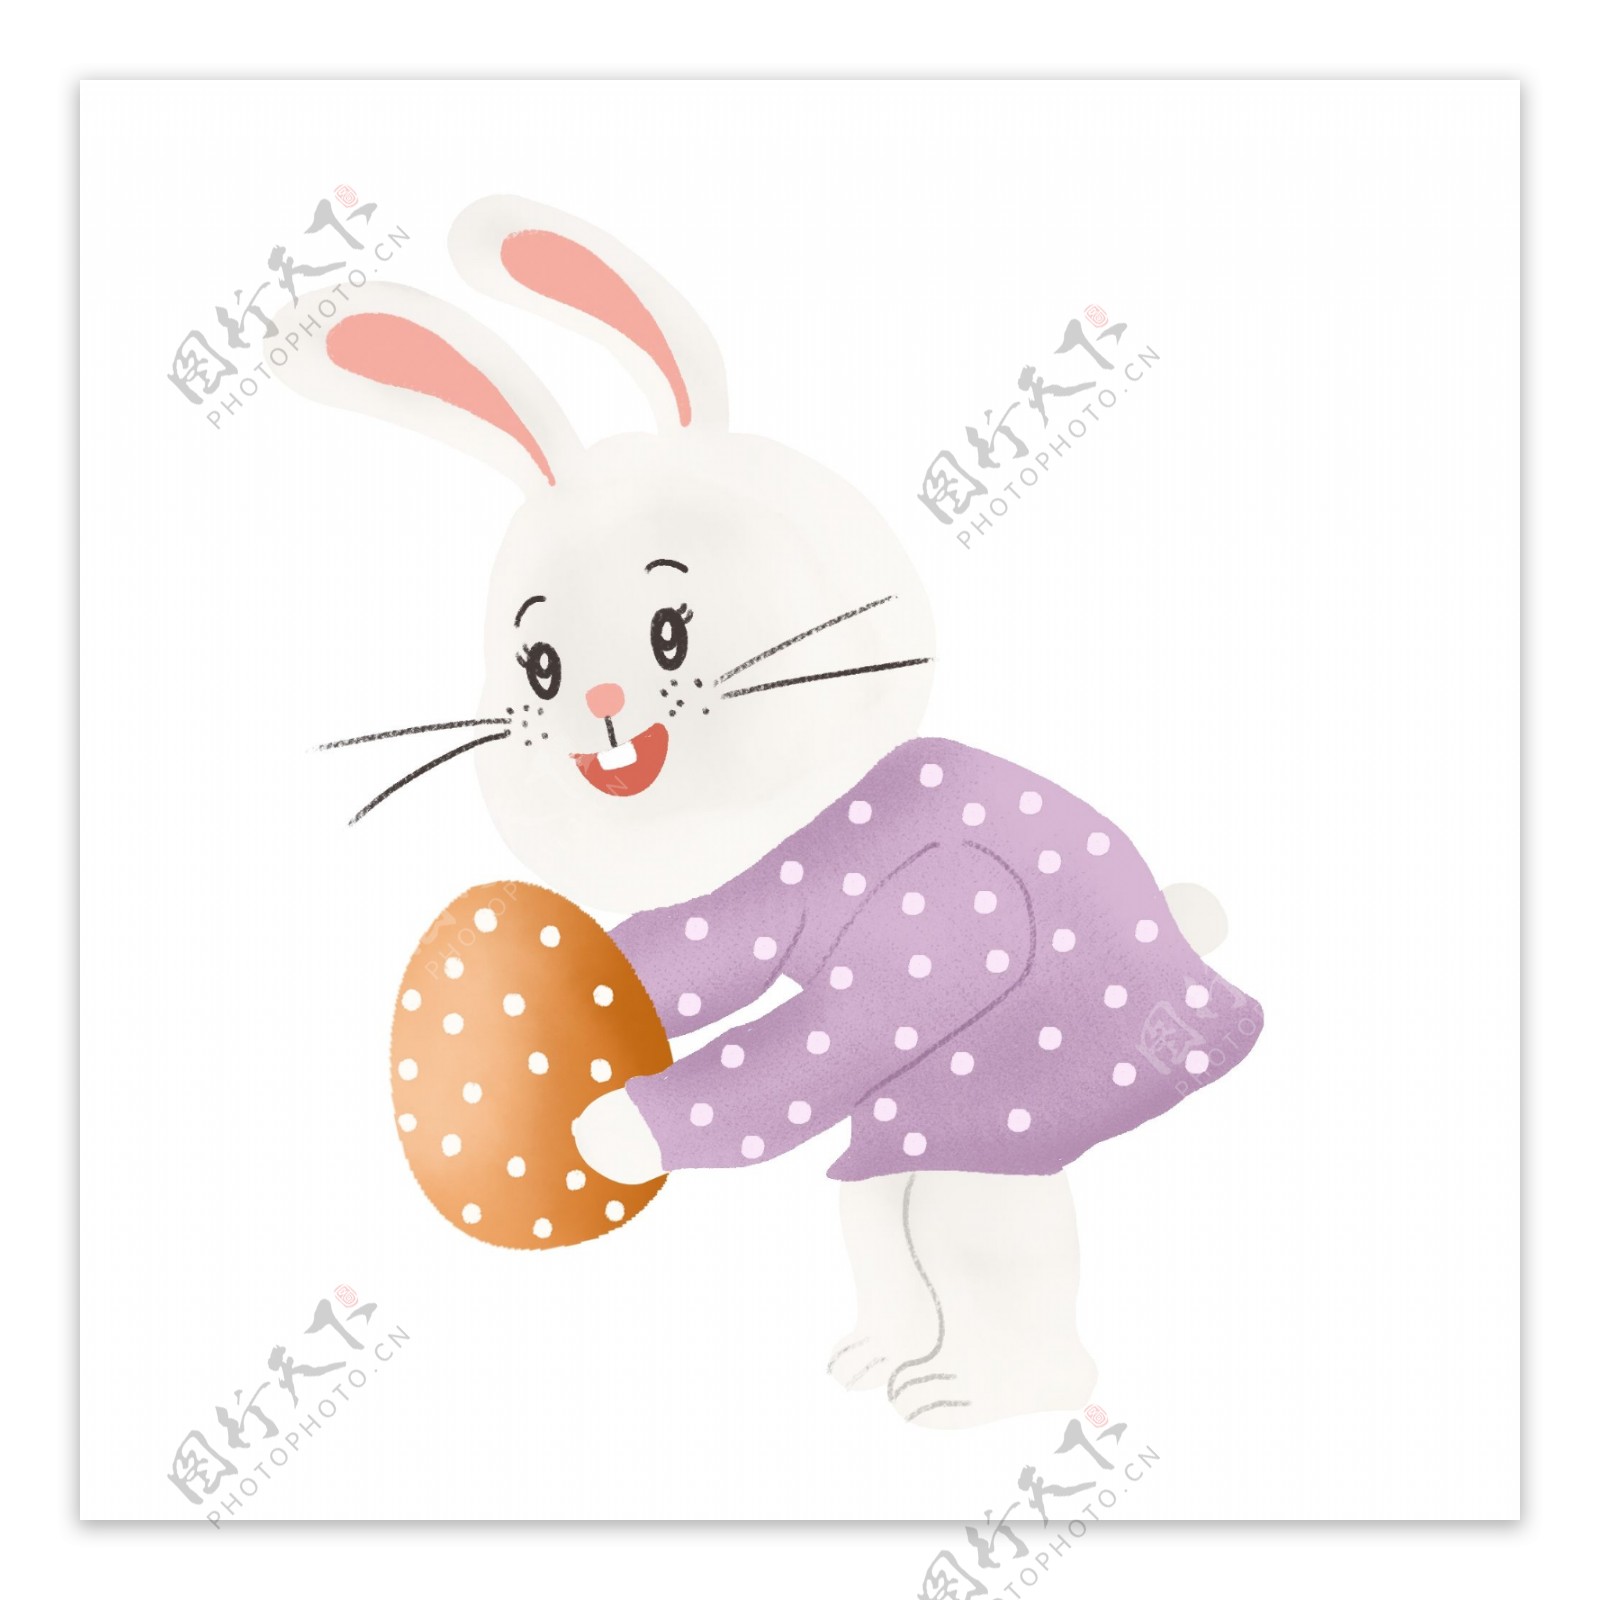 卡通兔子可爱动物免扣素材设计